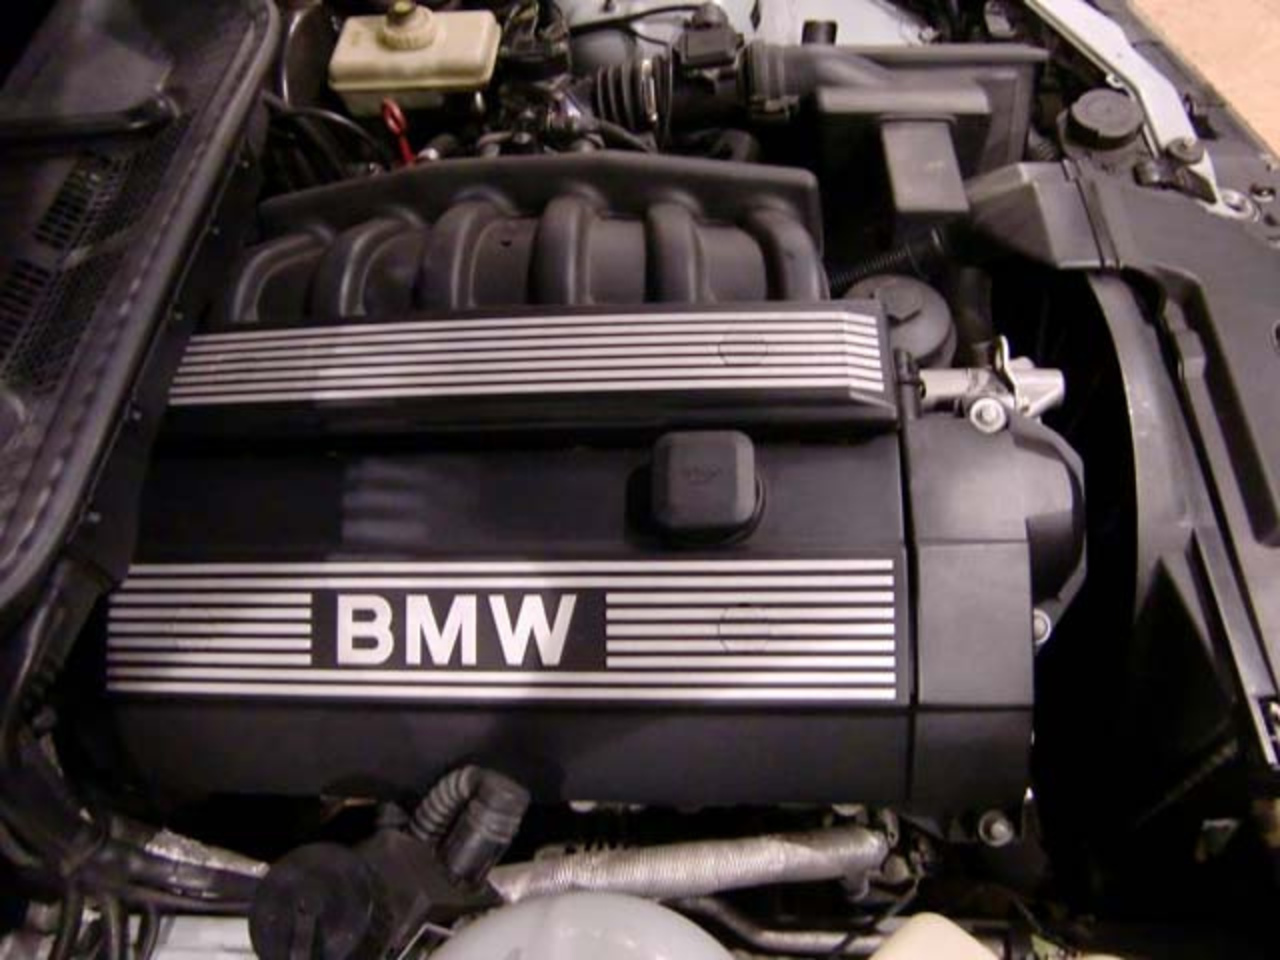 BMW 320i CABRIOLET E36 - AÃ‘O 1997 | Flickr - Photo Sharing!